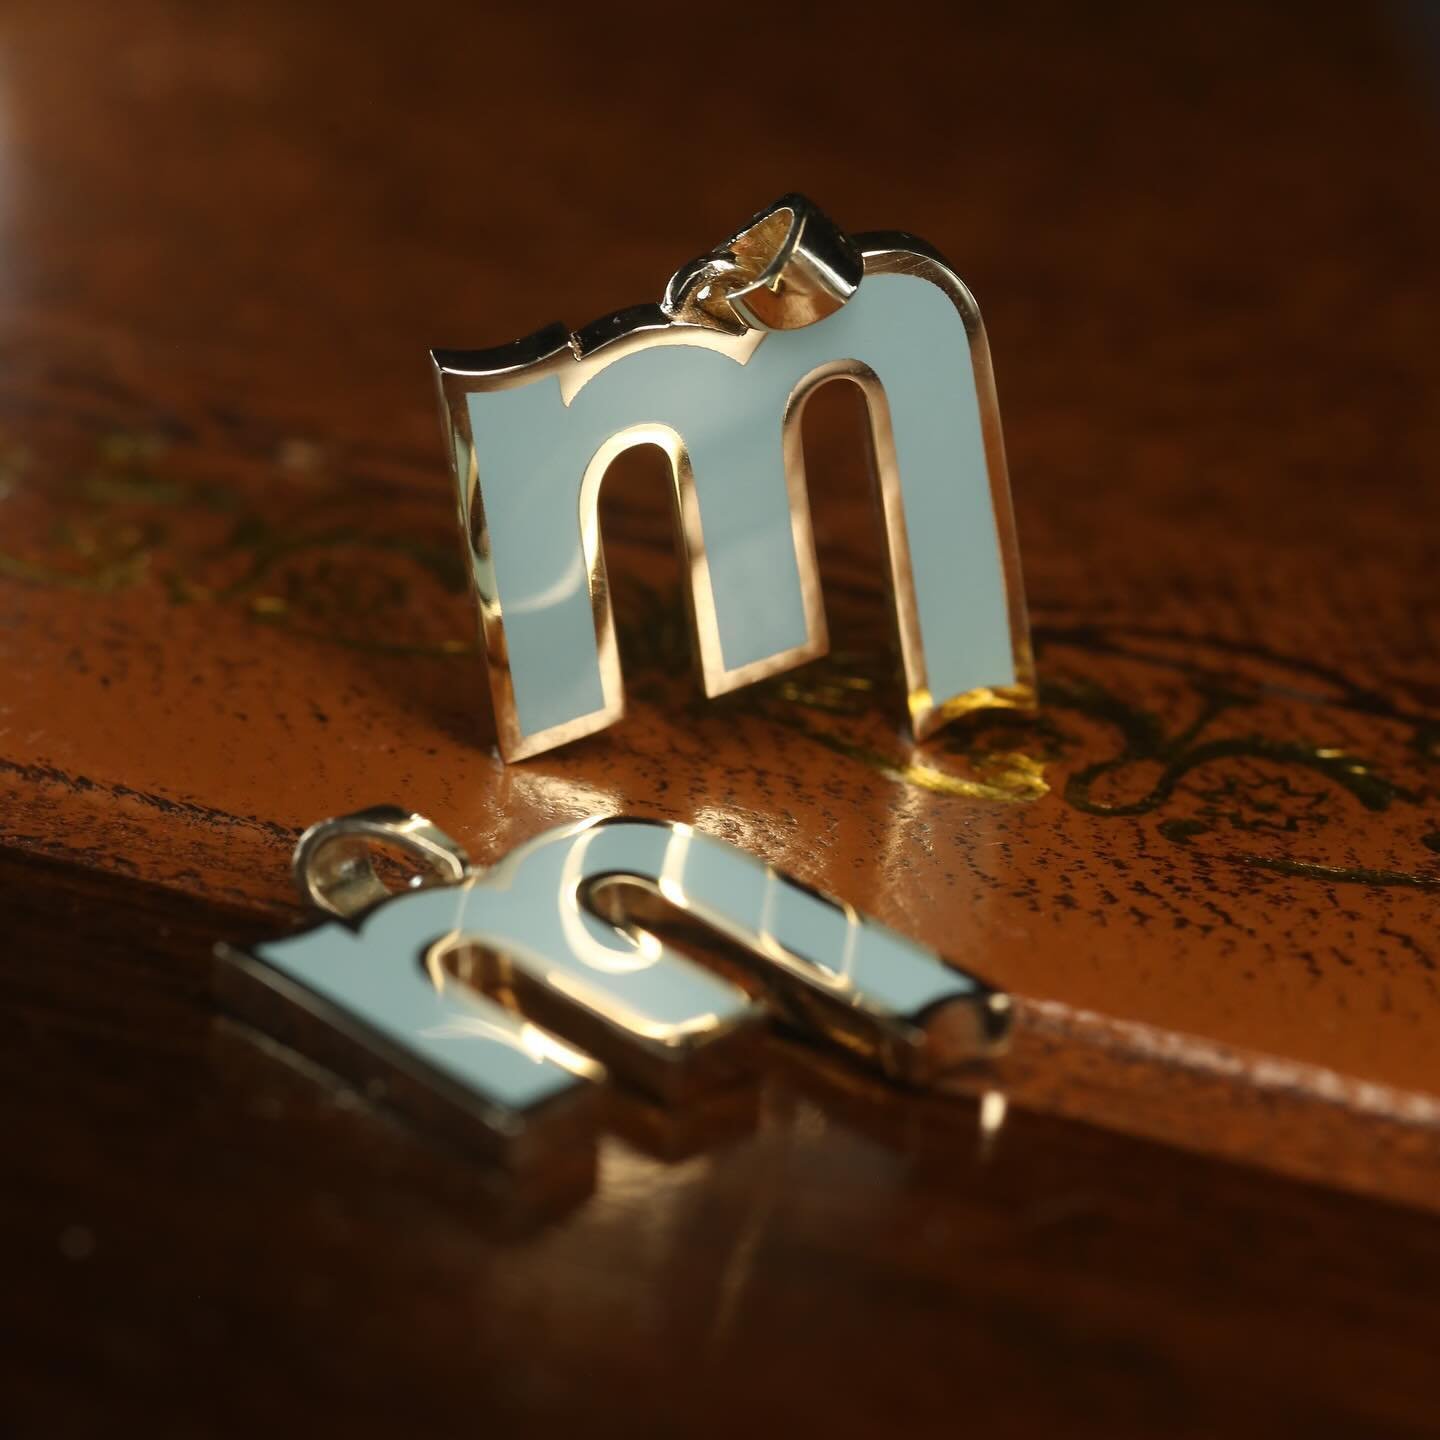 Some super sharp enamel. 🧼
Pair of M pendants in @milban blue. 👀